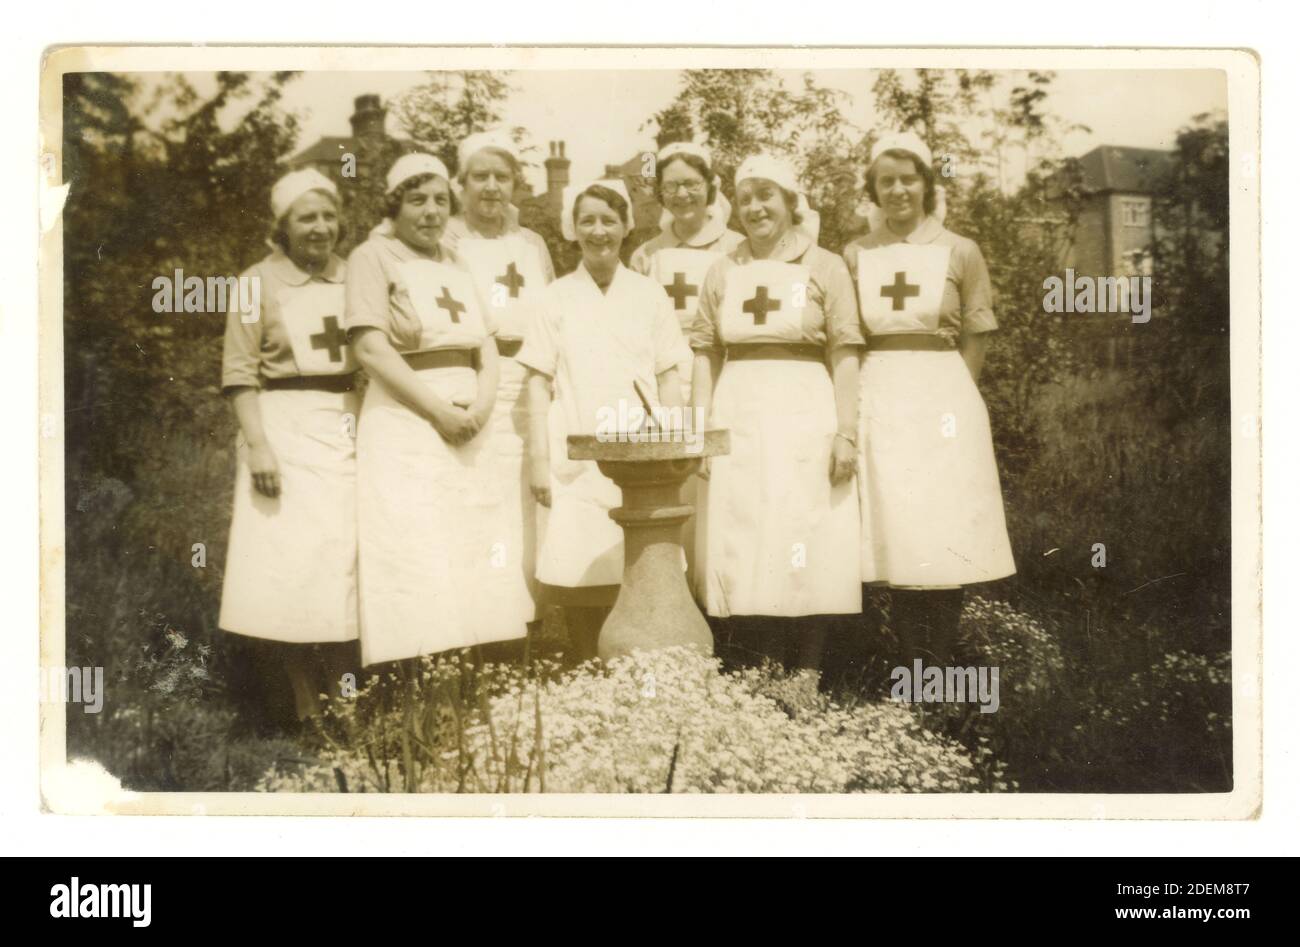 Cartolina originale post seconda guerra mondiale di gruppo di infermieri sorridenti che indossano uniformi rosse a croce, datata luglio 1946 Foto Stock